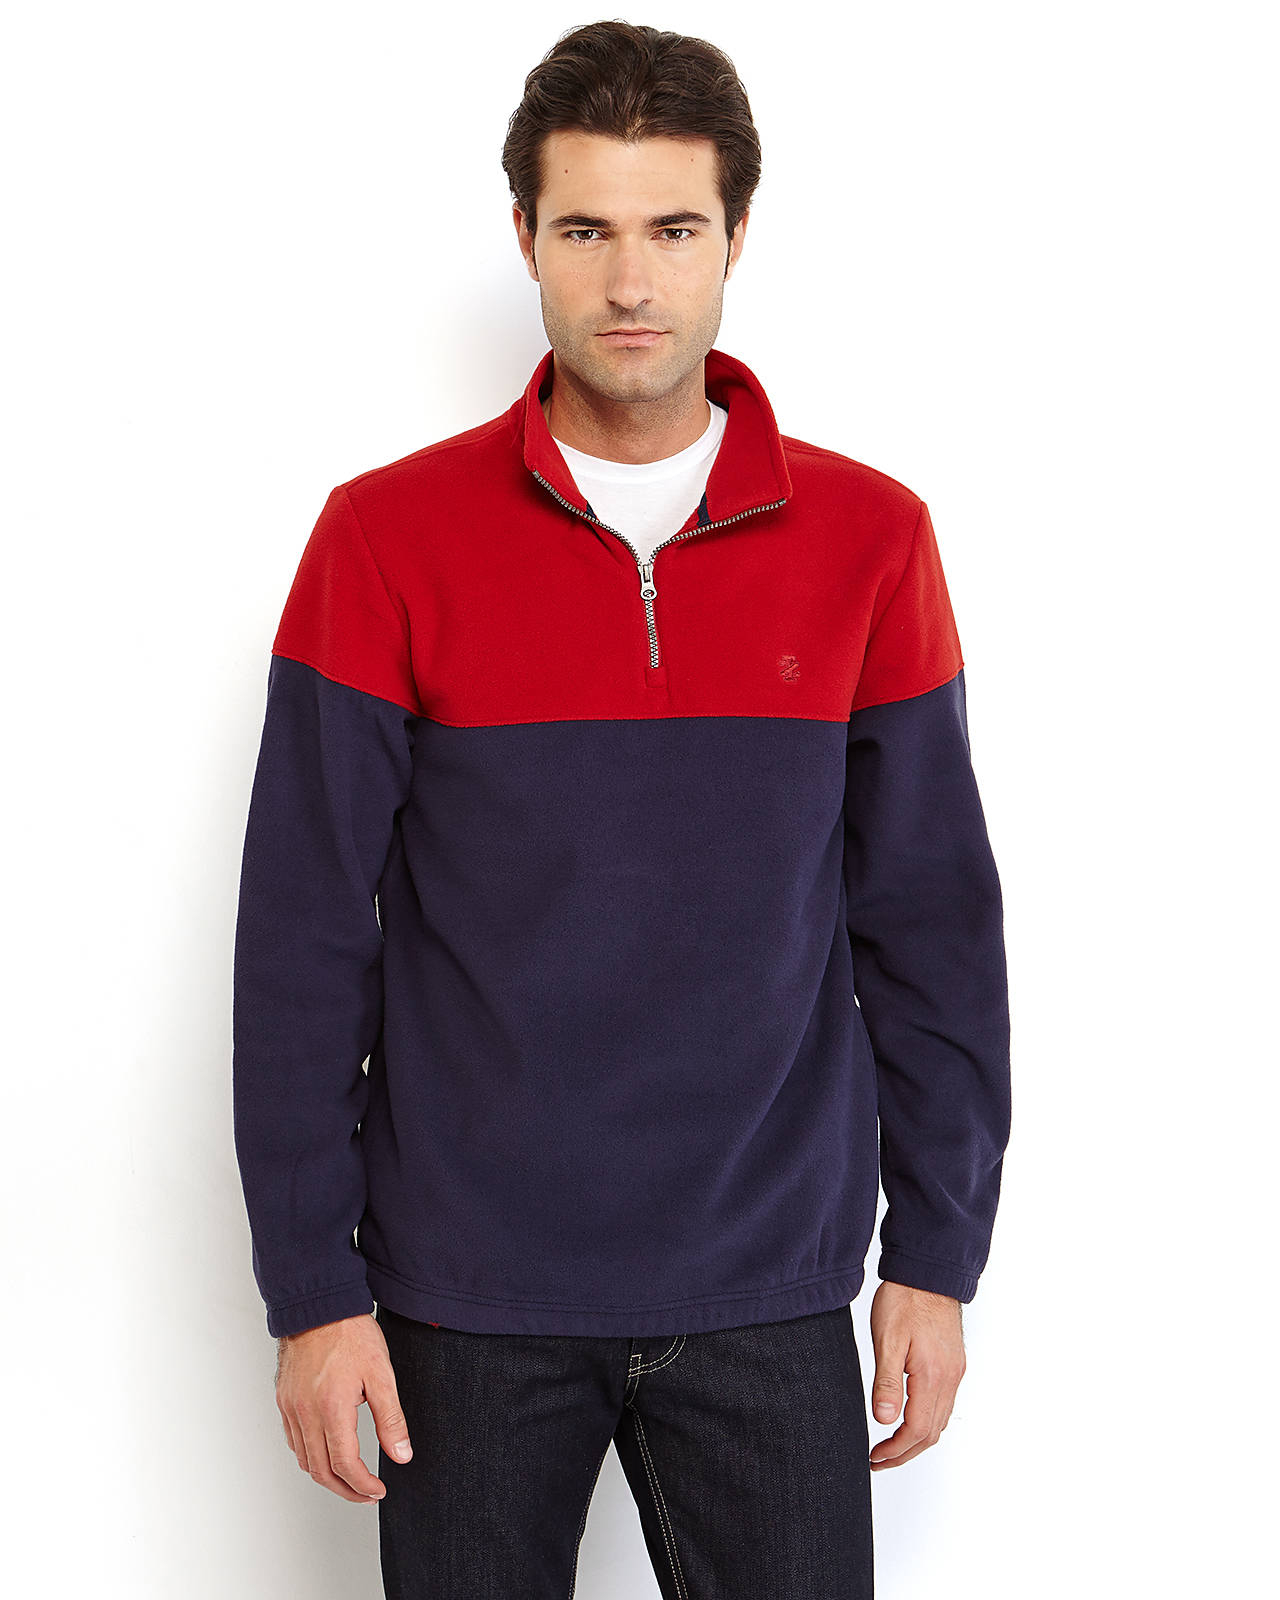 Lyst - Izod Color Block Quarter-Zip Pullover Fleece Sweater in Blue for Men